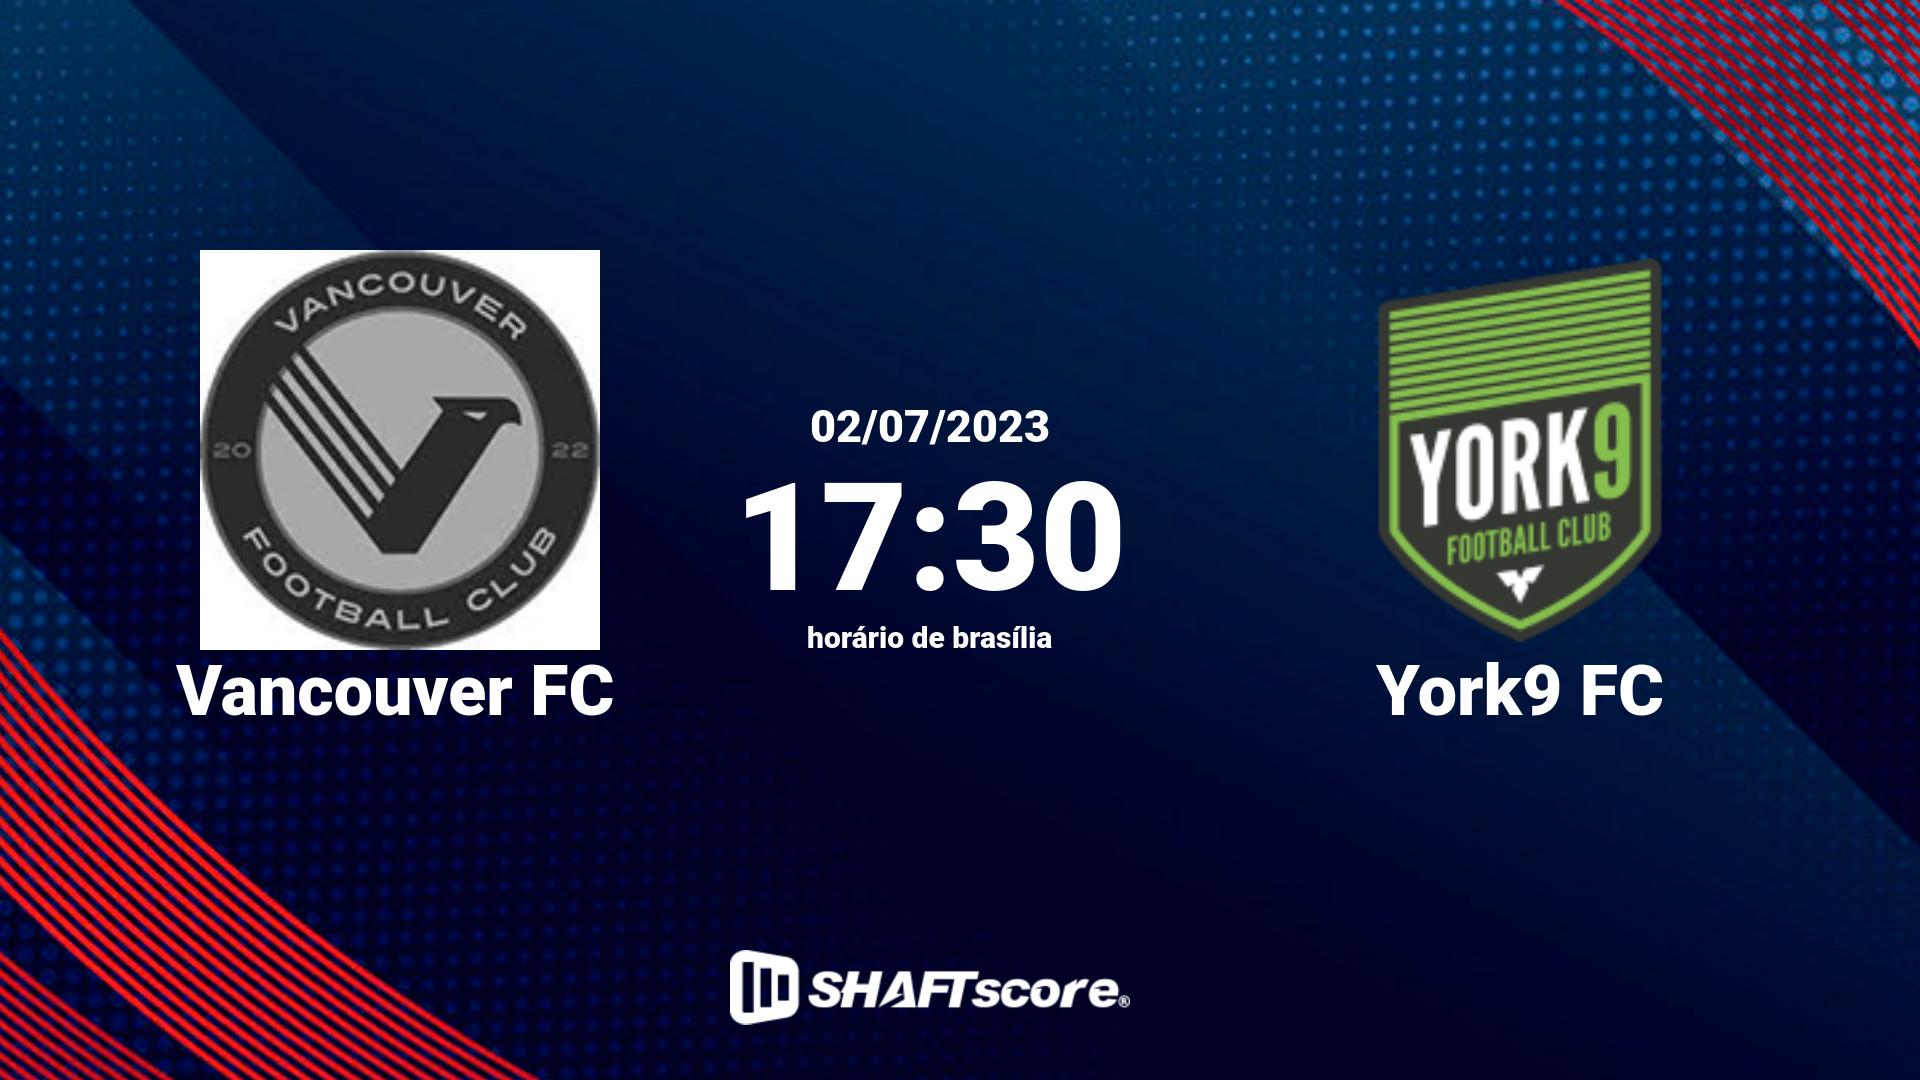 Estatísticas do jogo Vancouver FC vs York9 FC 02.07 17:30